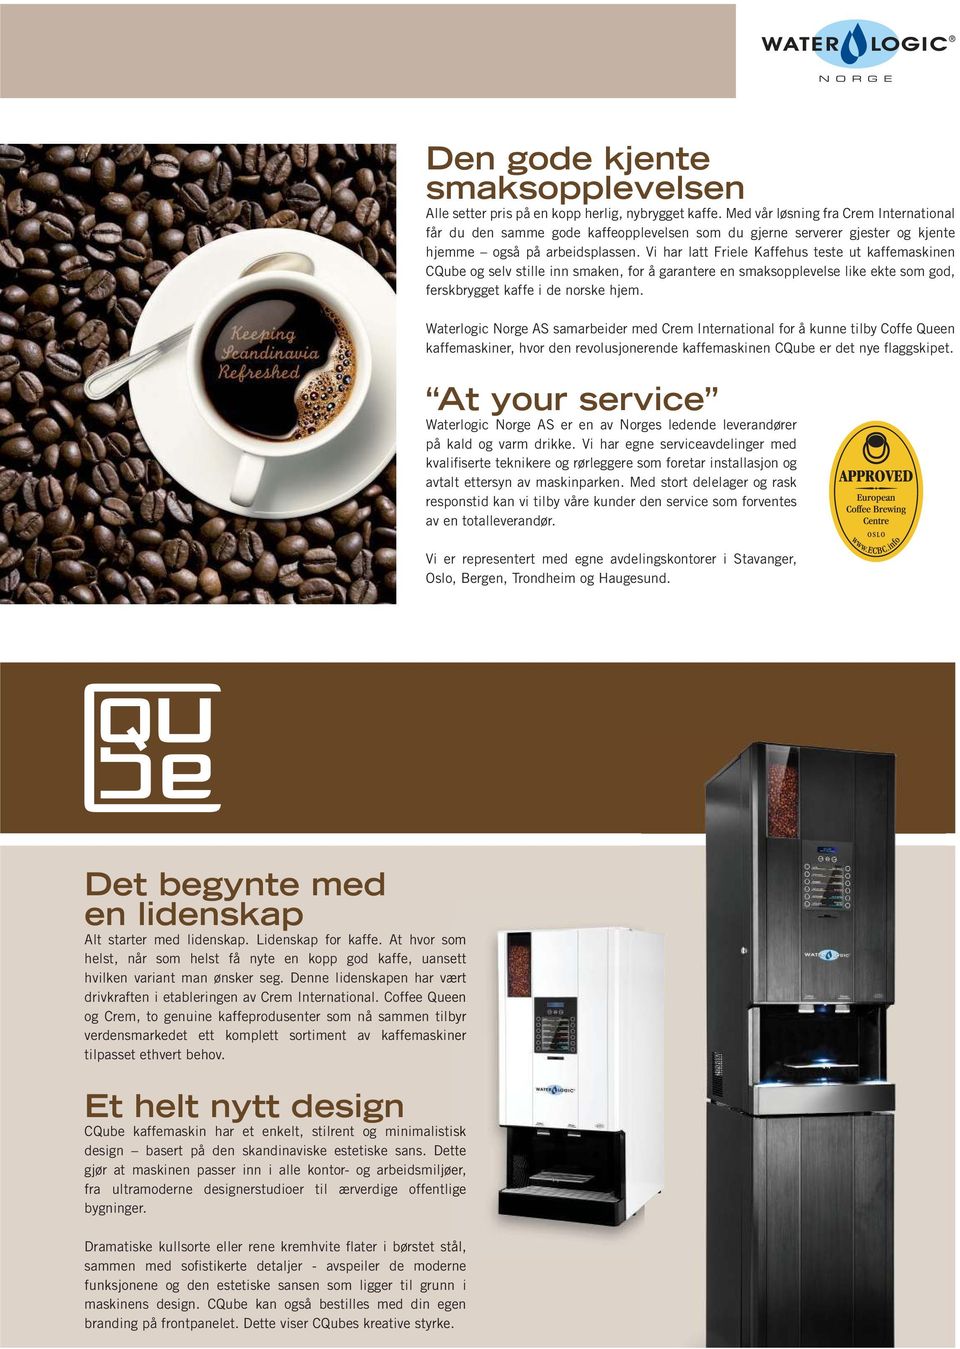 Vi har latt Friele Kaffehus teste ut kaffemaskinen CQube og selv stille inn smaken, for å garantere en smaksopplevelse like ekte som god, ferskbrygget kaffe i de norske hjem.